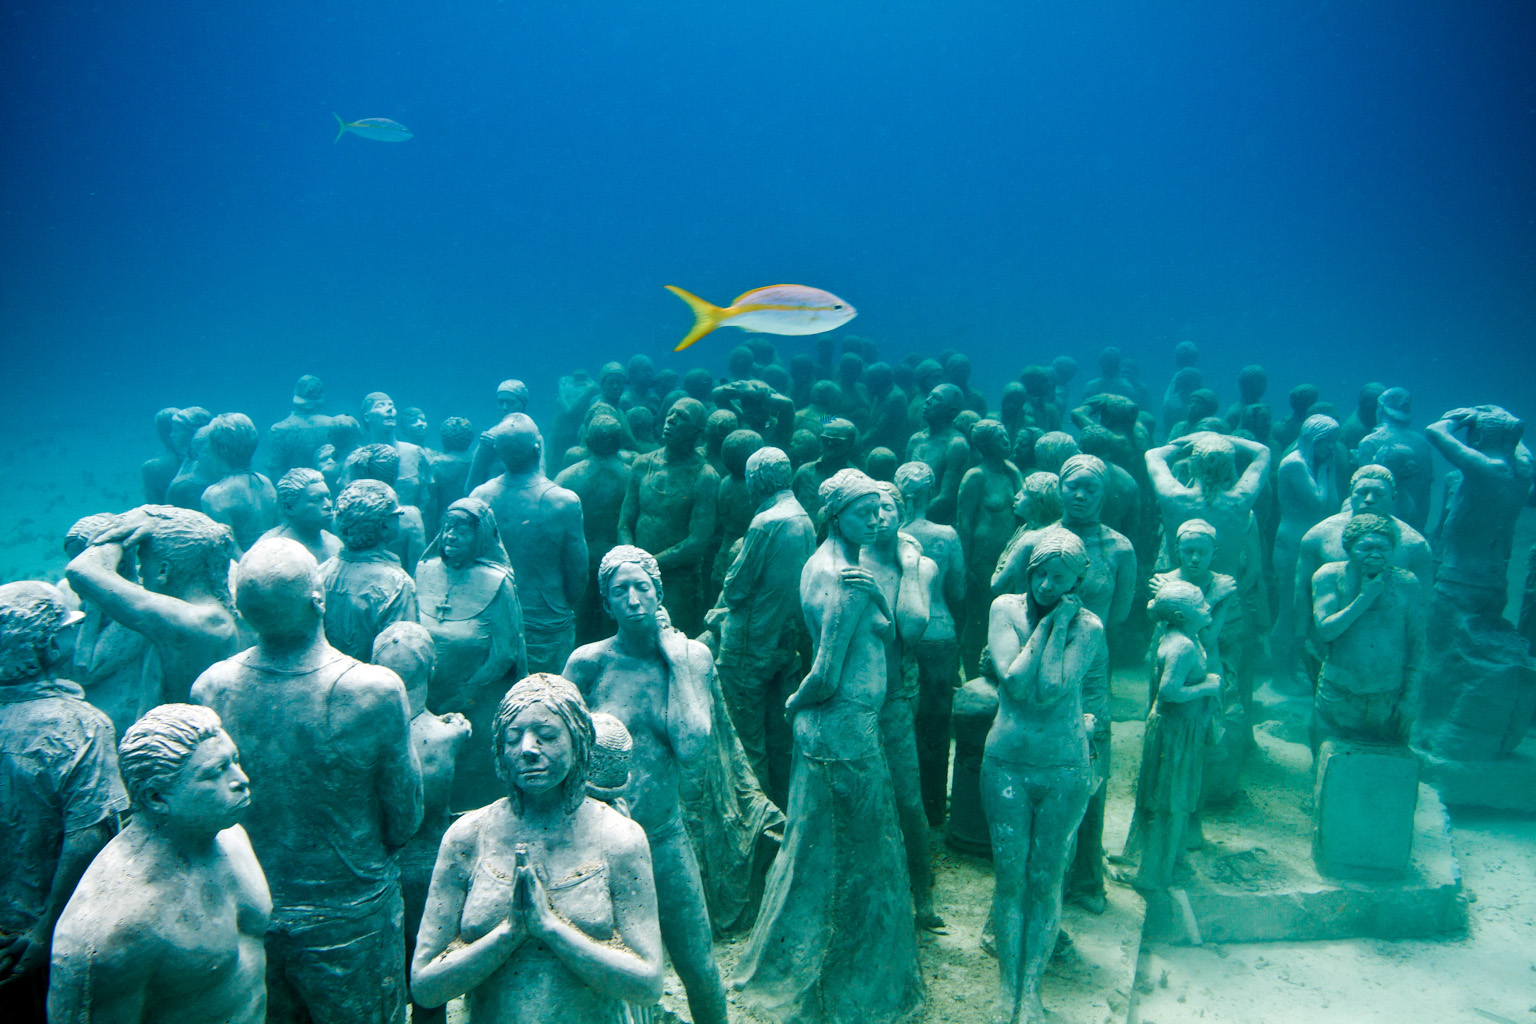 MUSA underwater museum near the Playa Mujeres marina